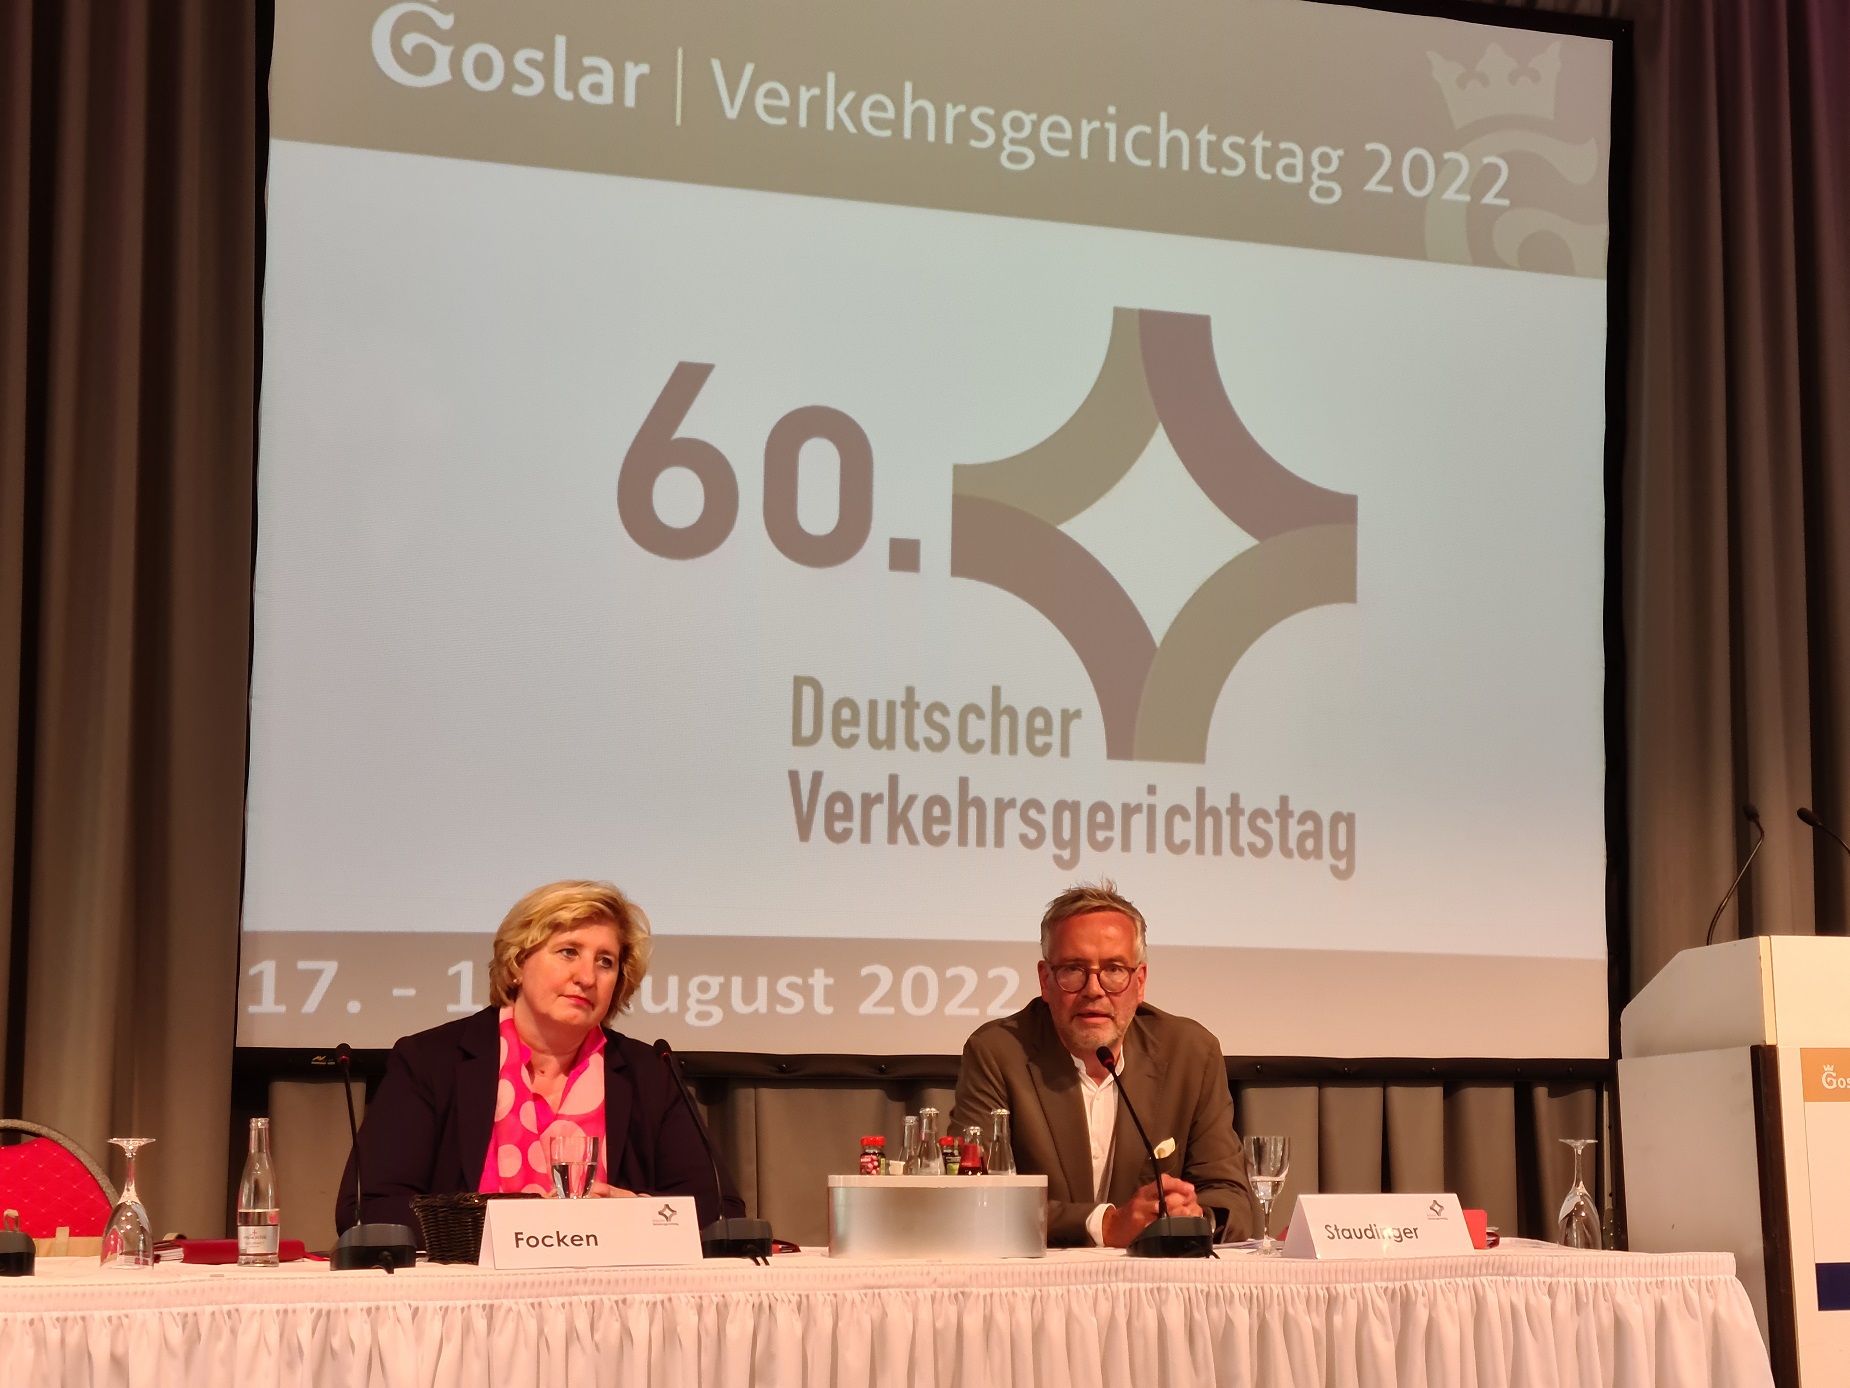 Pressesprecherin Maria Focken und der Präsident des Deutschen Verkehrsgerichtstages, Prof. Dr. Staudinger in der Eröffnungs-Pressekonferenz